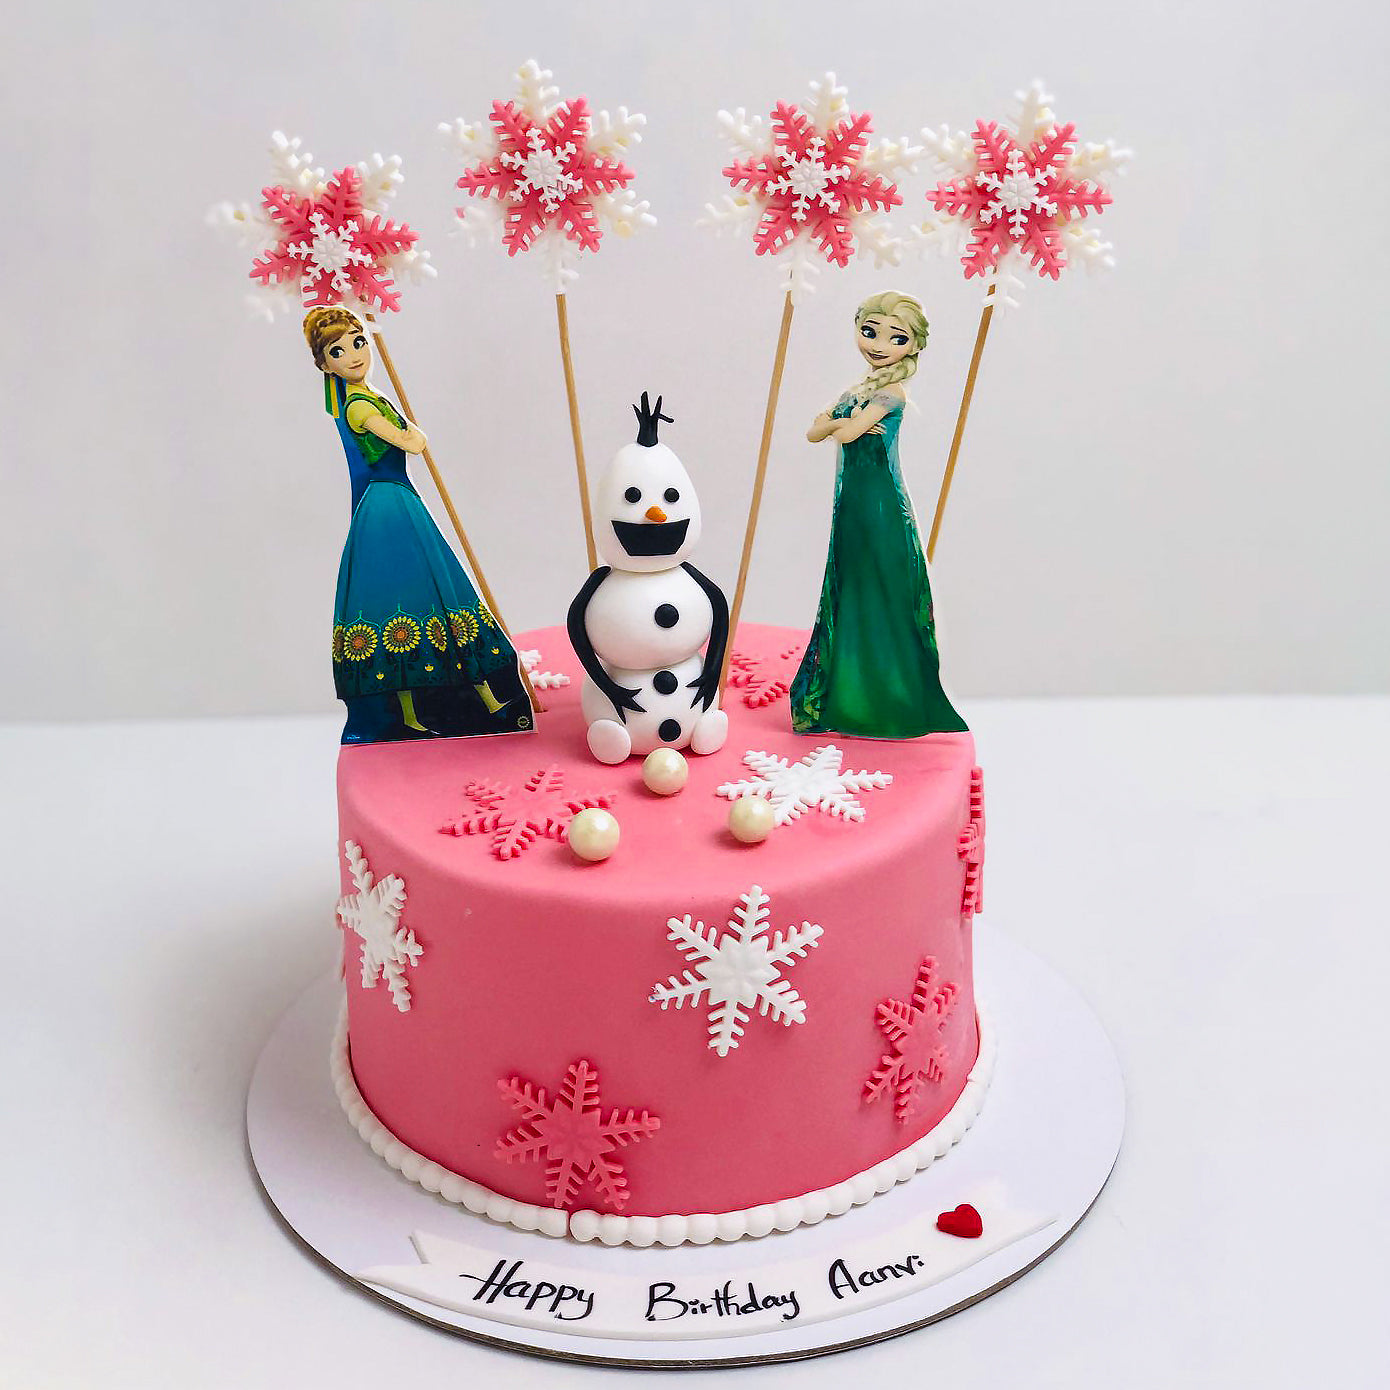 TNP19 Princess Elsa Dream - The Cake Shop | Singapore Cake Delivery